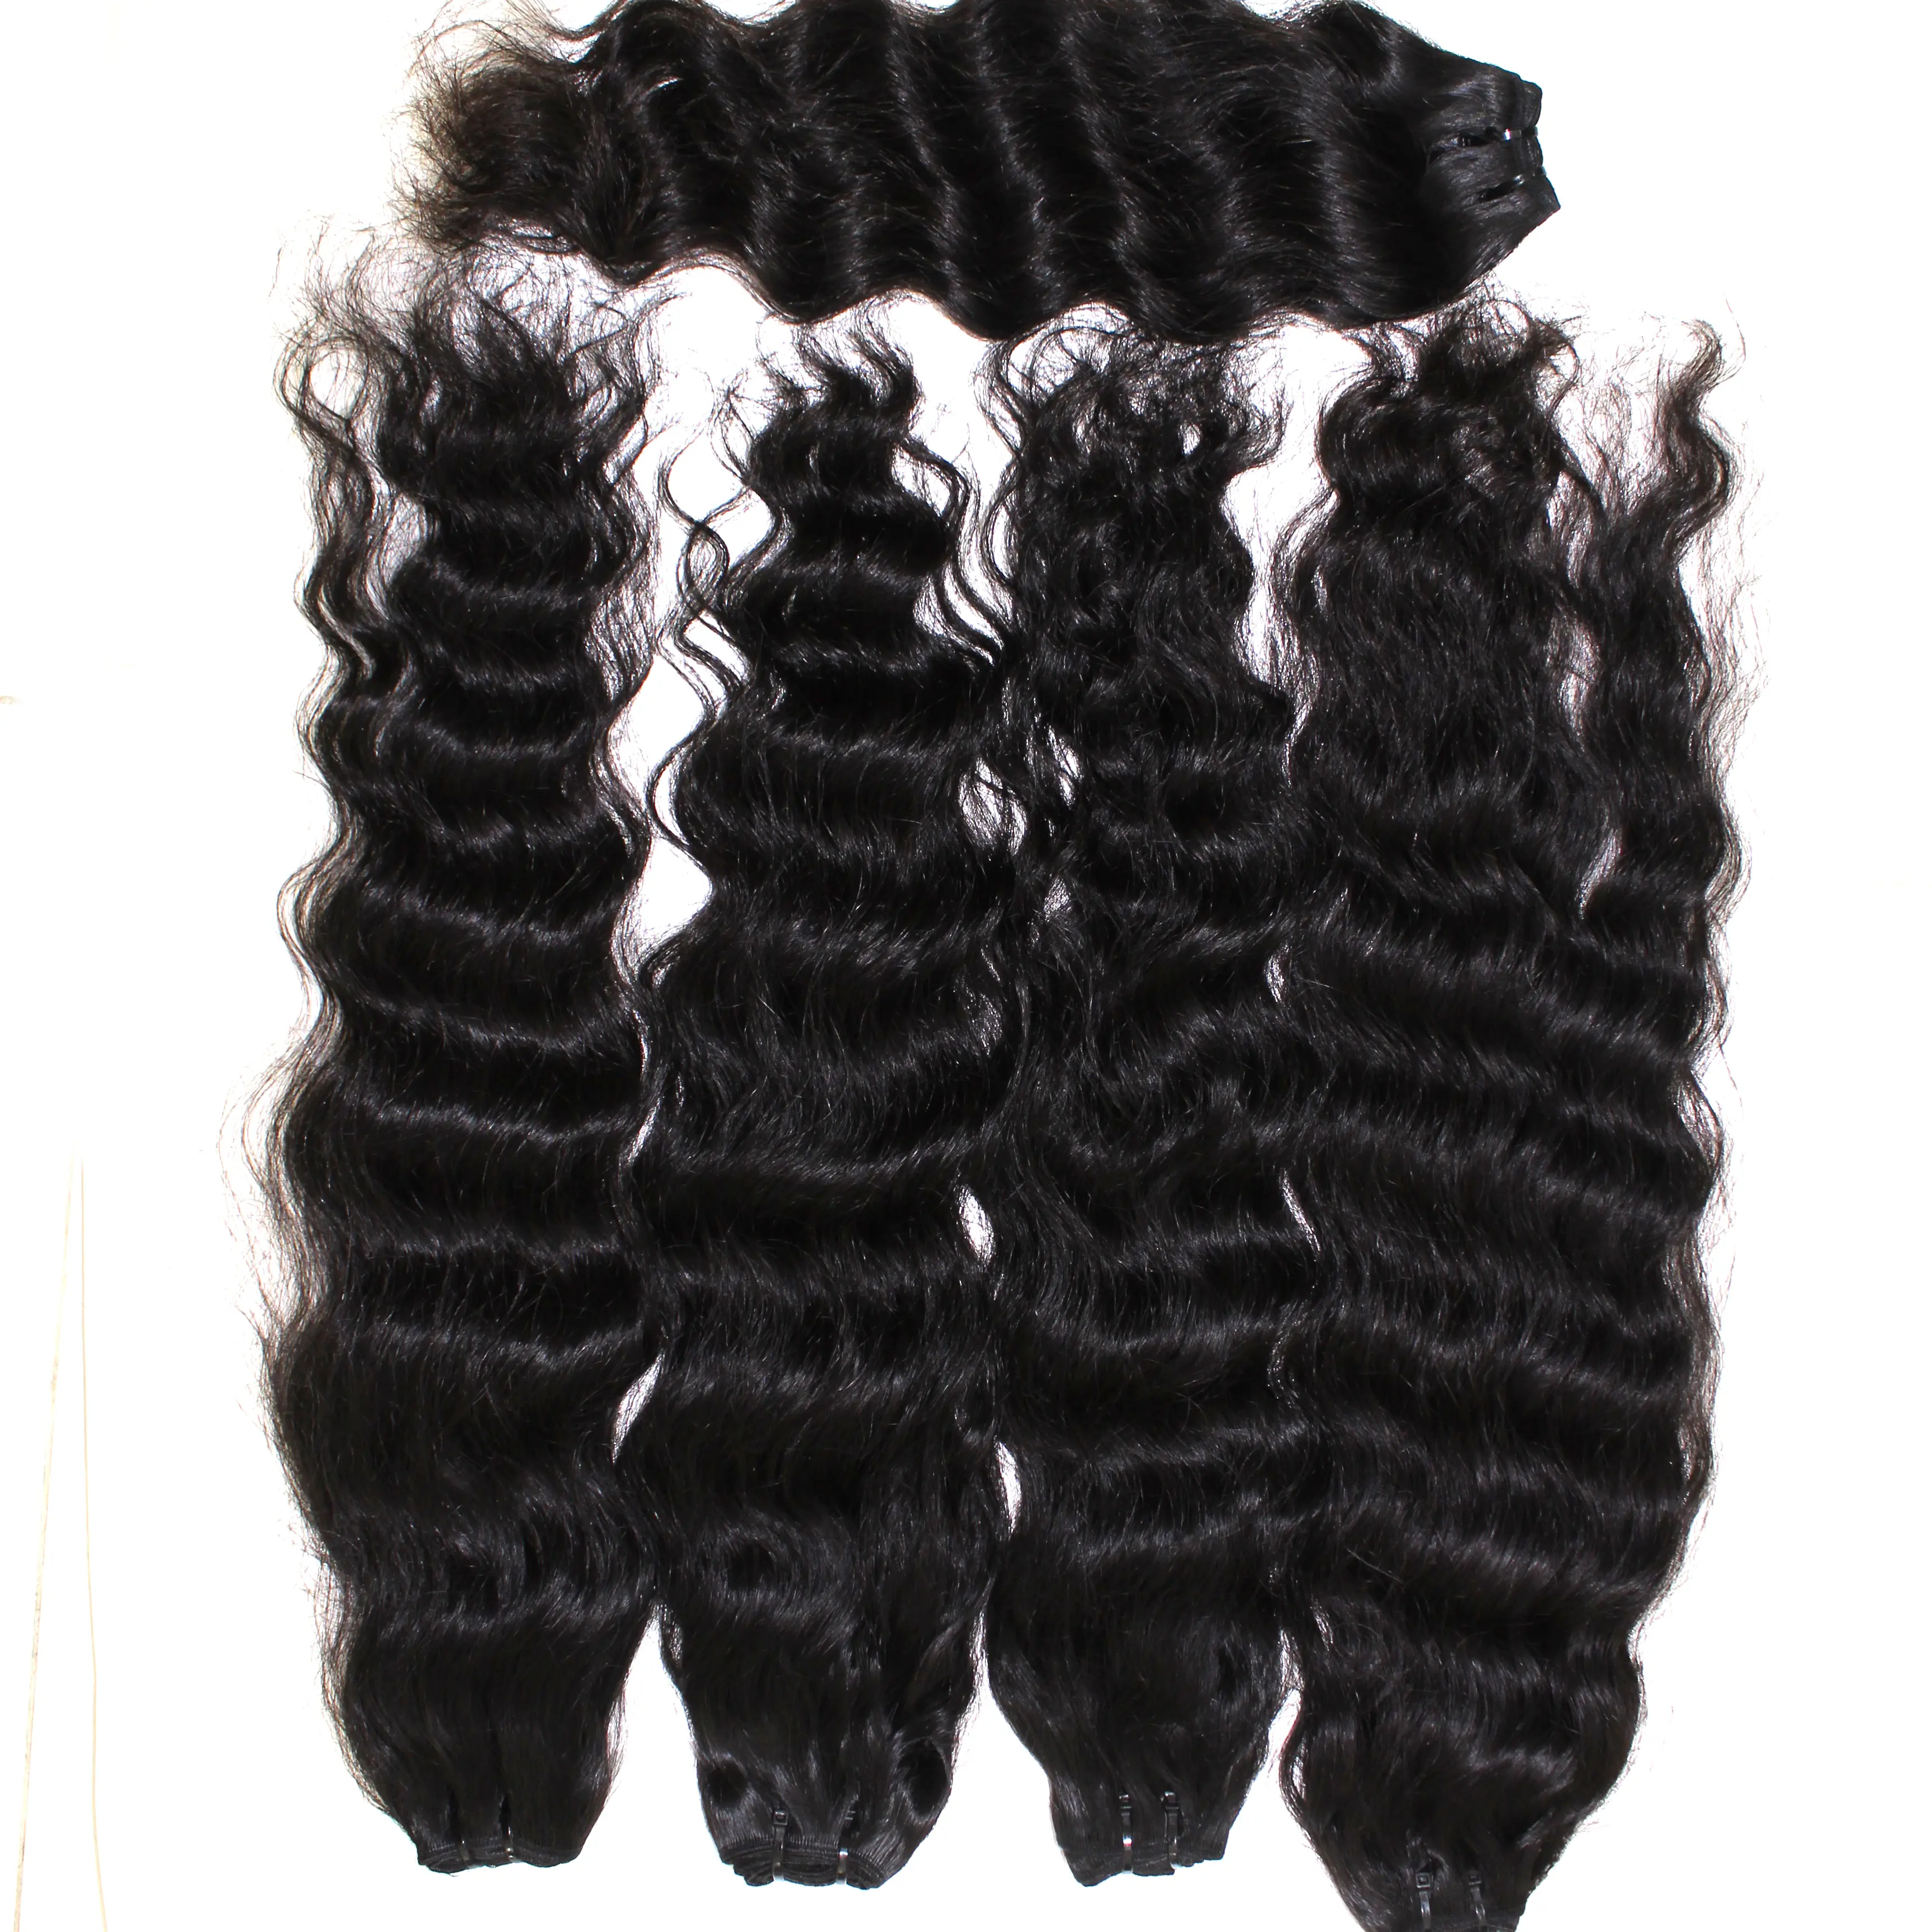 Barato cru cambojano cabelo ondulado duplo desenhado cutícula alinhado cabelo barato encaracolado profunda pele ondulada trama fita extensão do cabelo